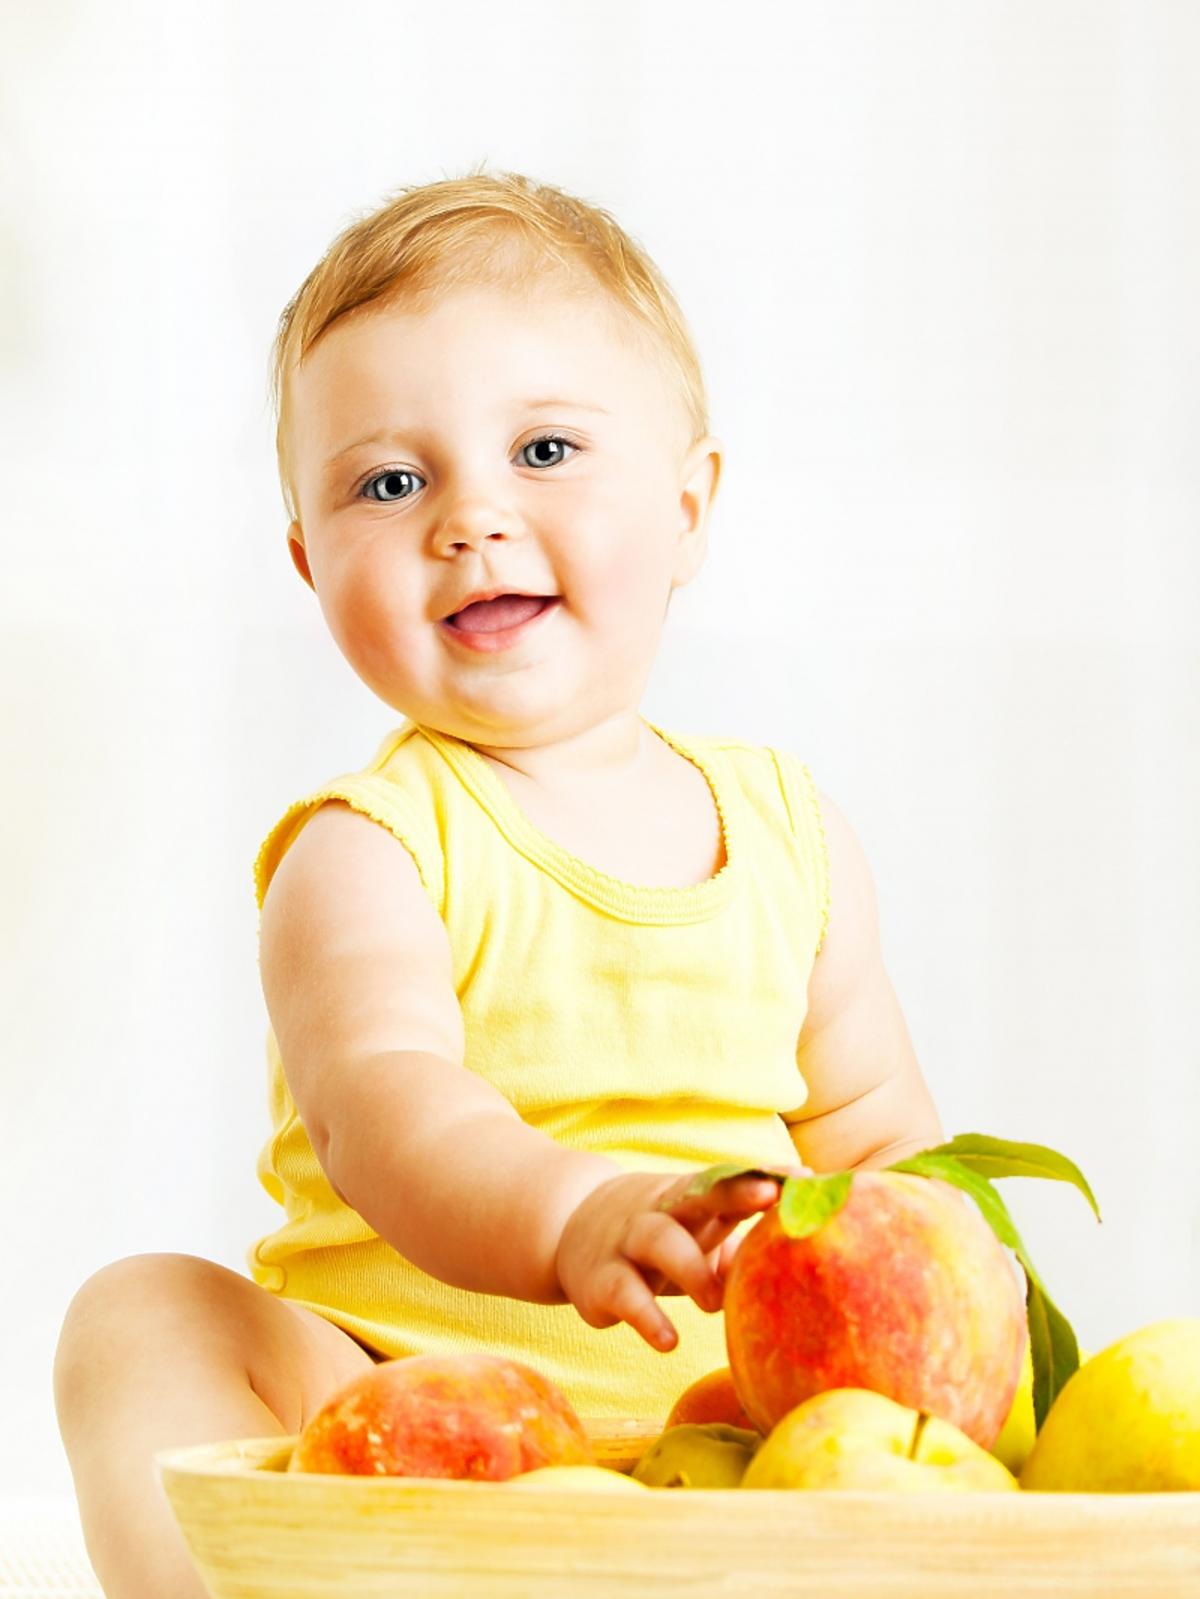 owoce i dziecko